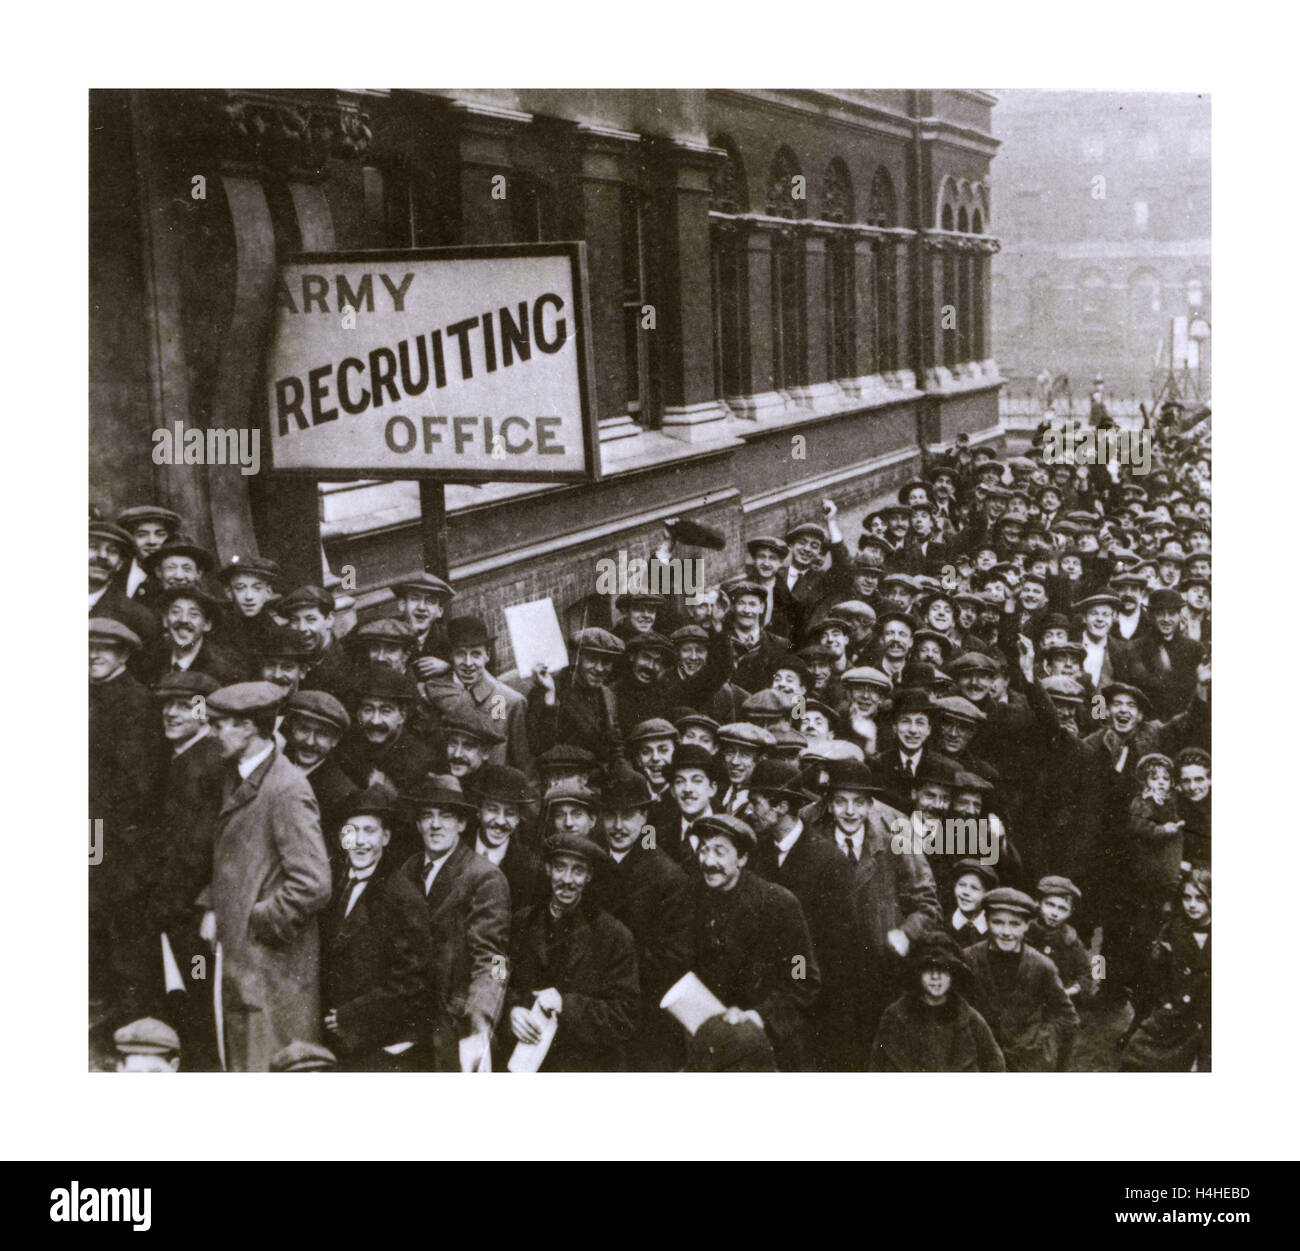 WW1 Army Recruiting Office avec des foules de jeunes hommes heureux prêts et attendant de s'enrôler pour la guerre. Lord Derby campagne de recrutement.Walworth Town Hall Southwark Londres 1915 première Guerre mondiale première Guerre mondiale Banque D'Images